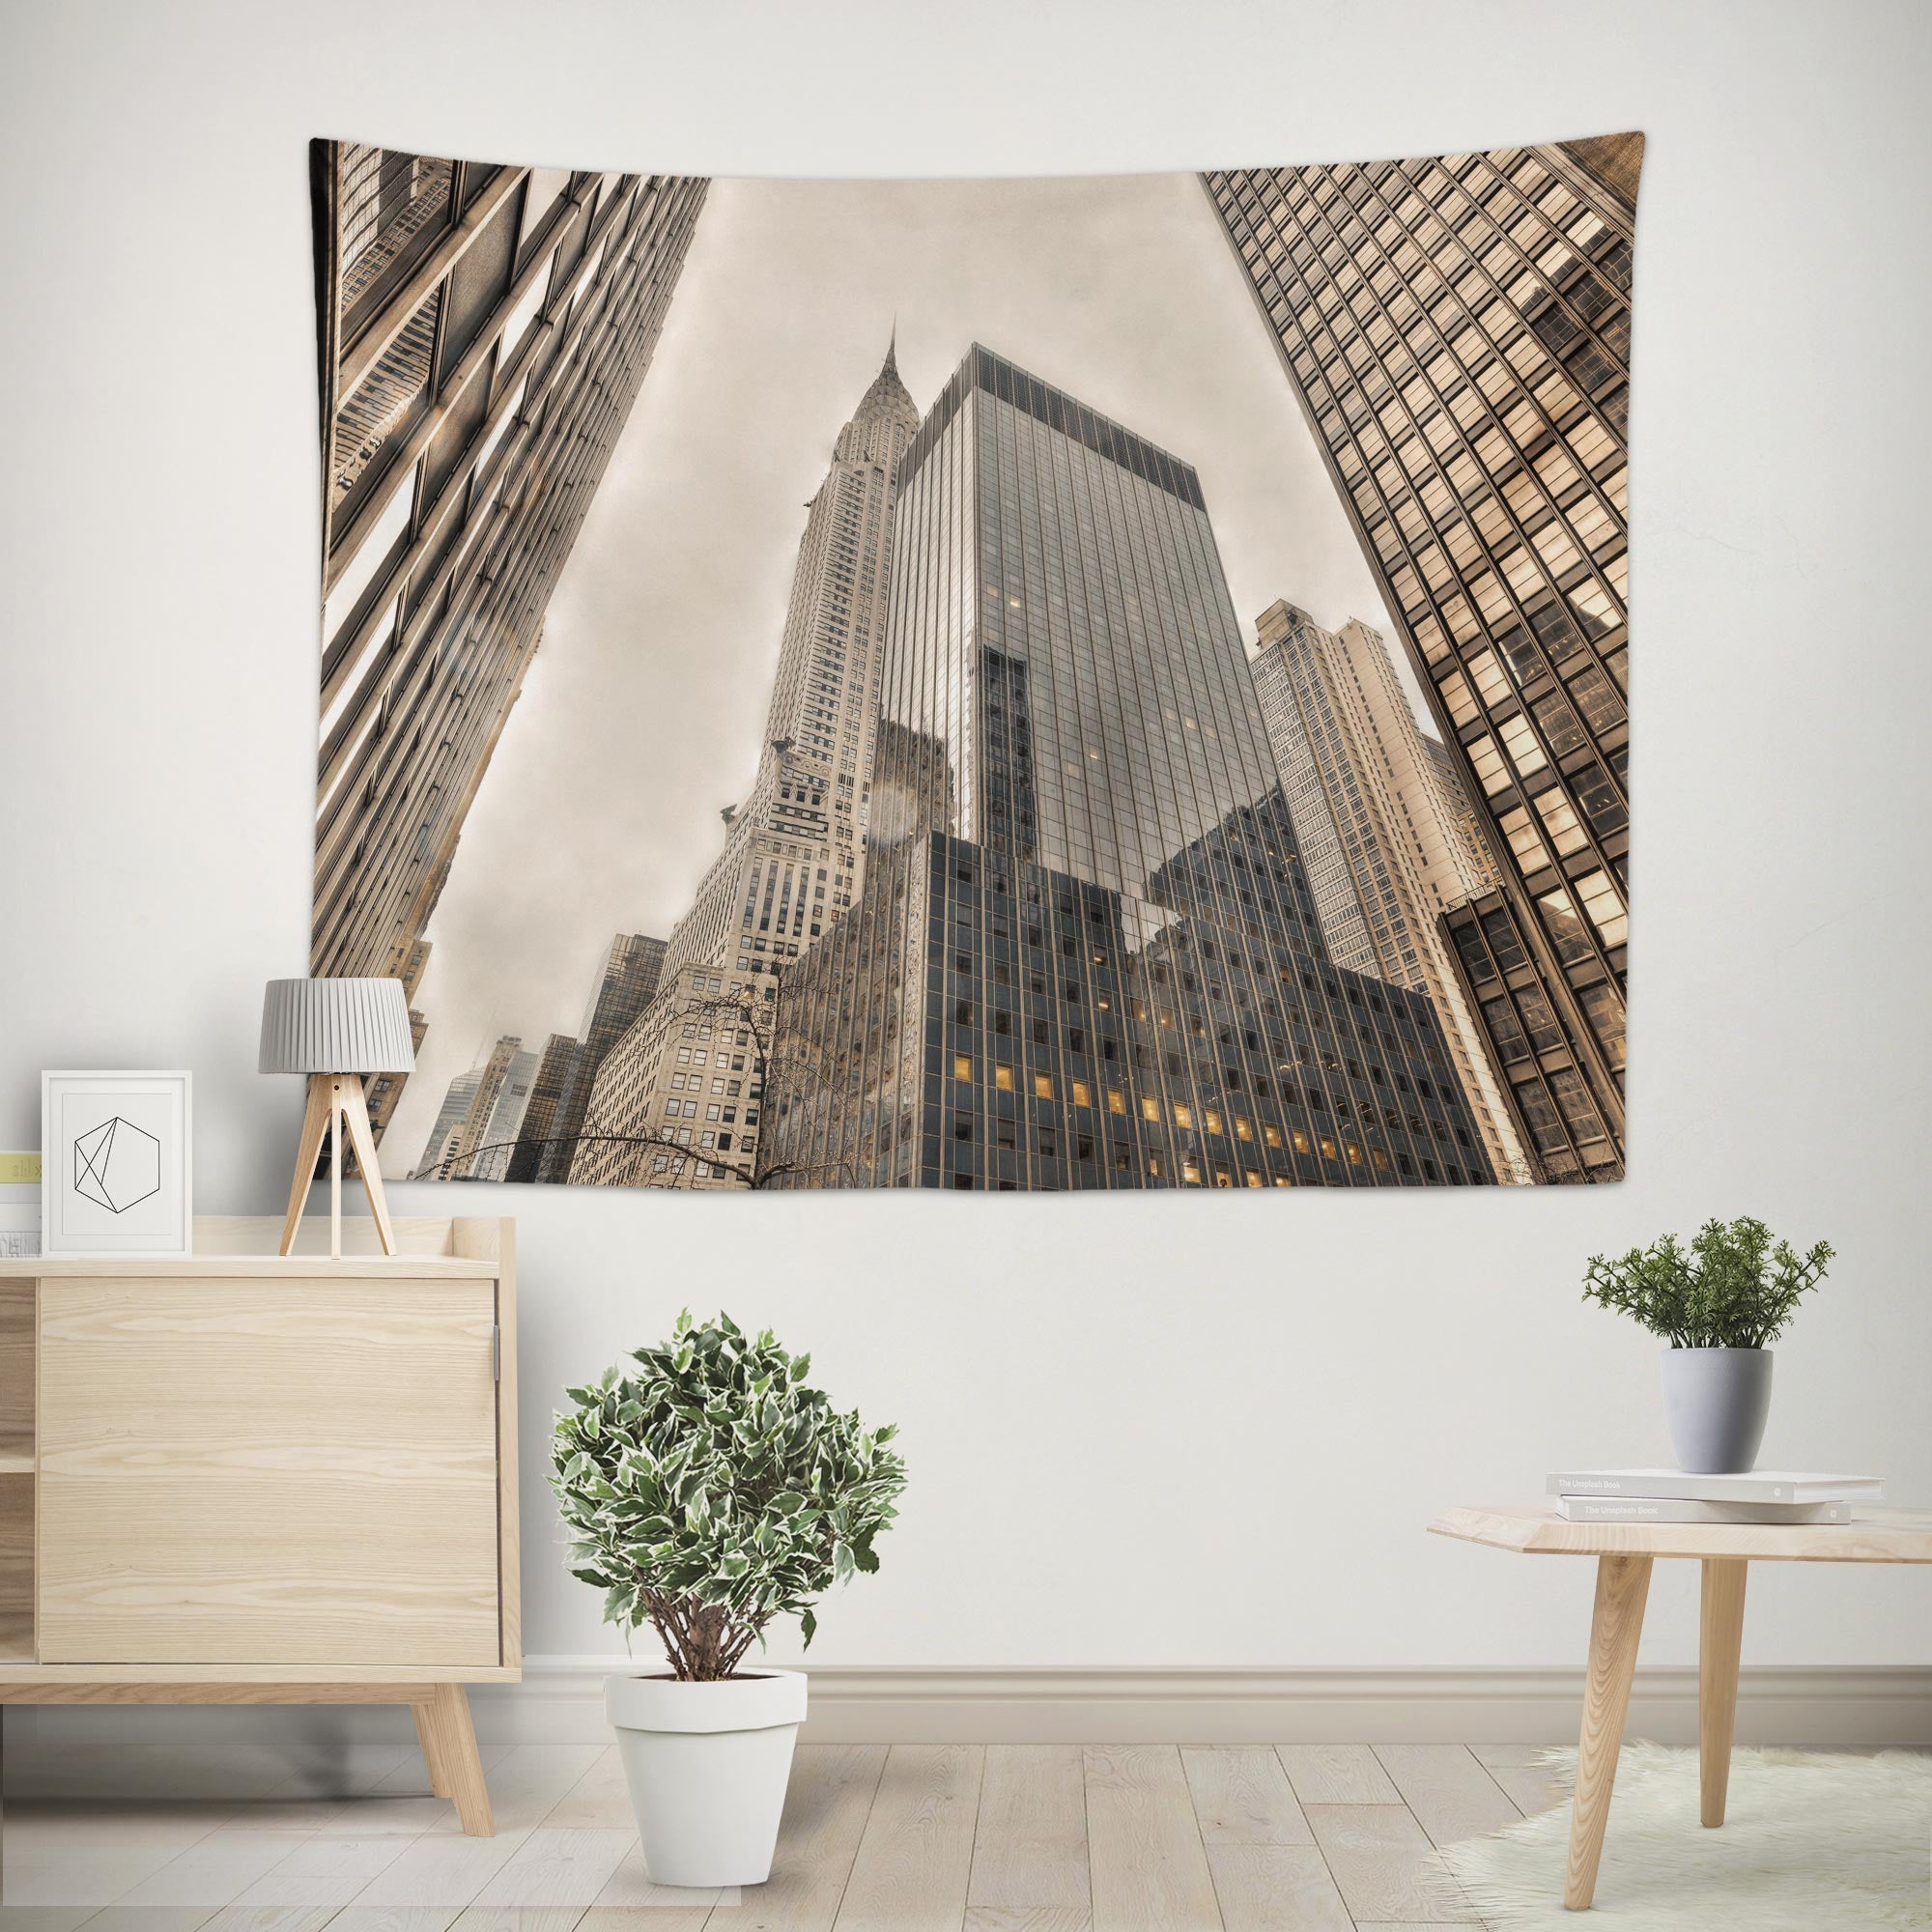 3D Building 116112 Assaf Frank Tapestry Hanging Cloth Hang